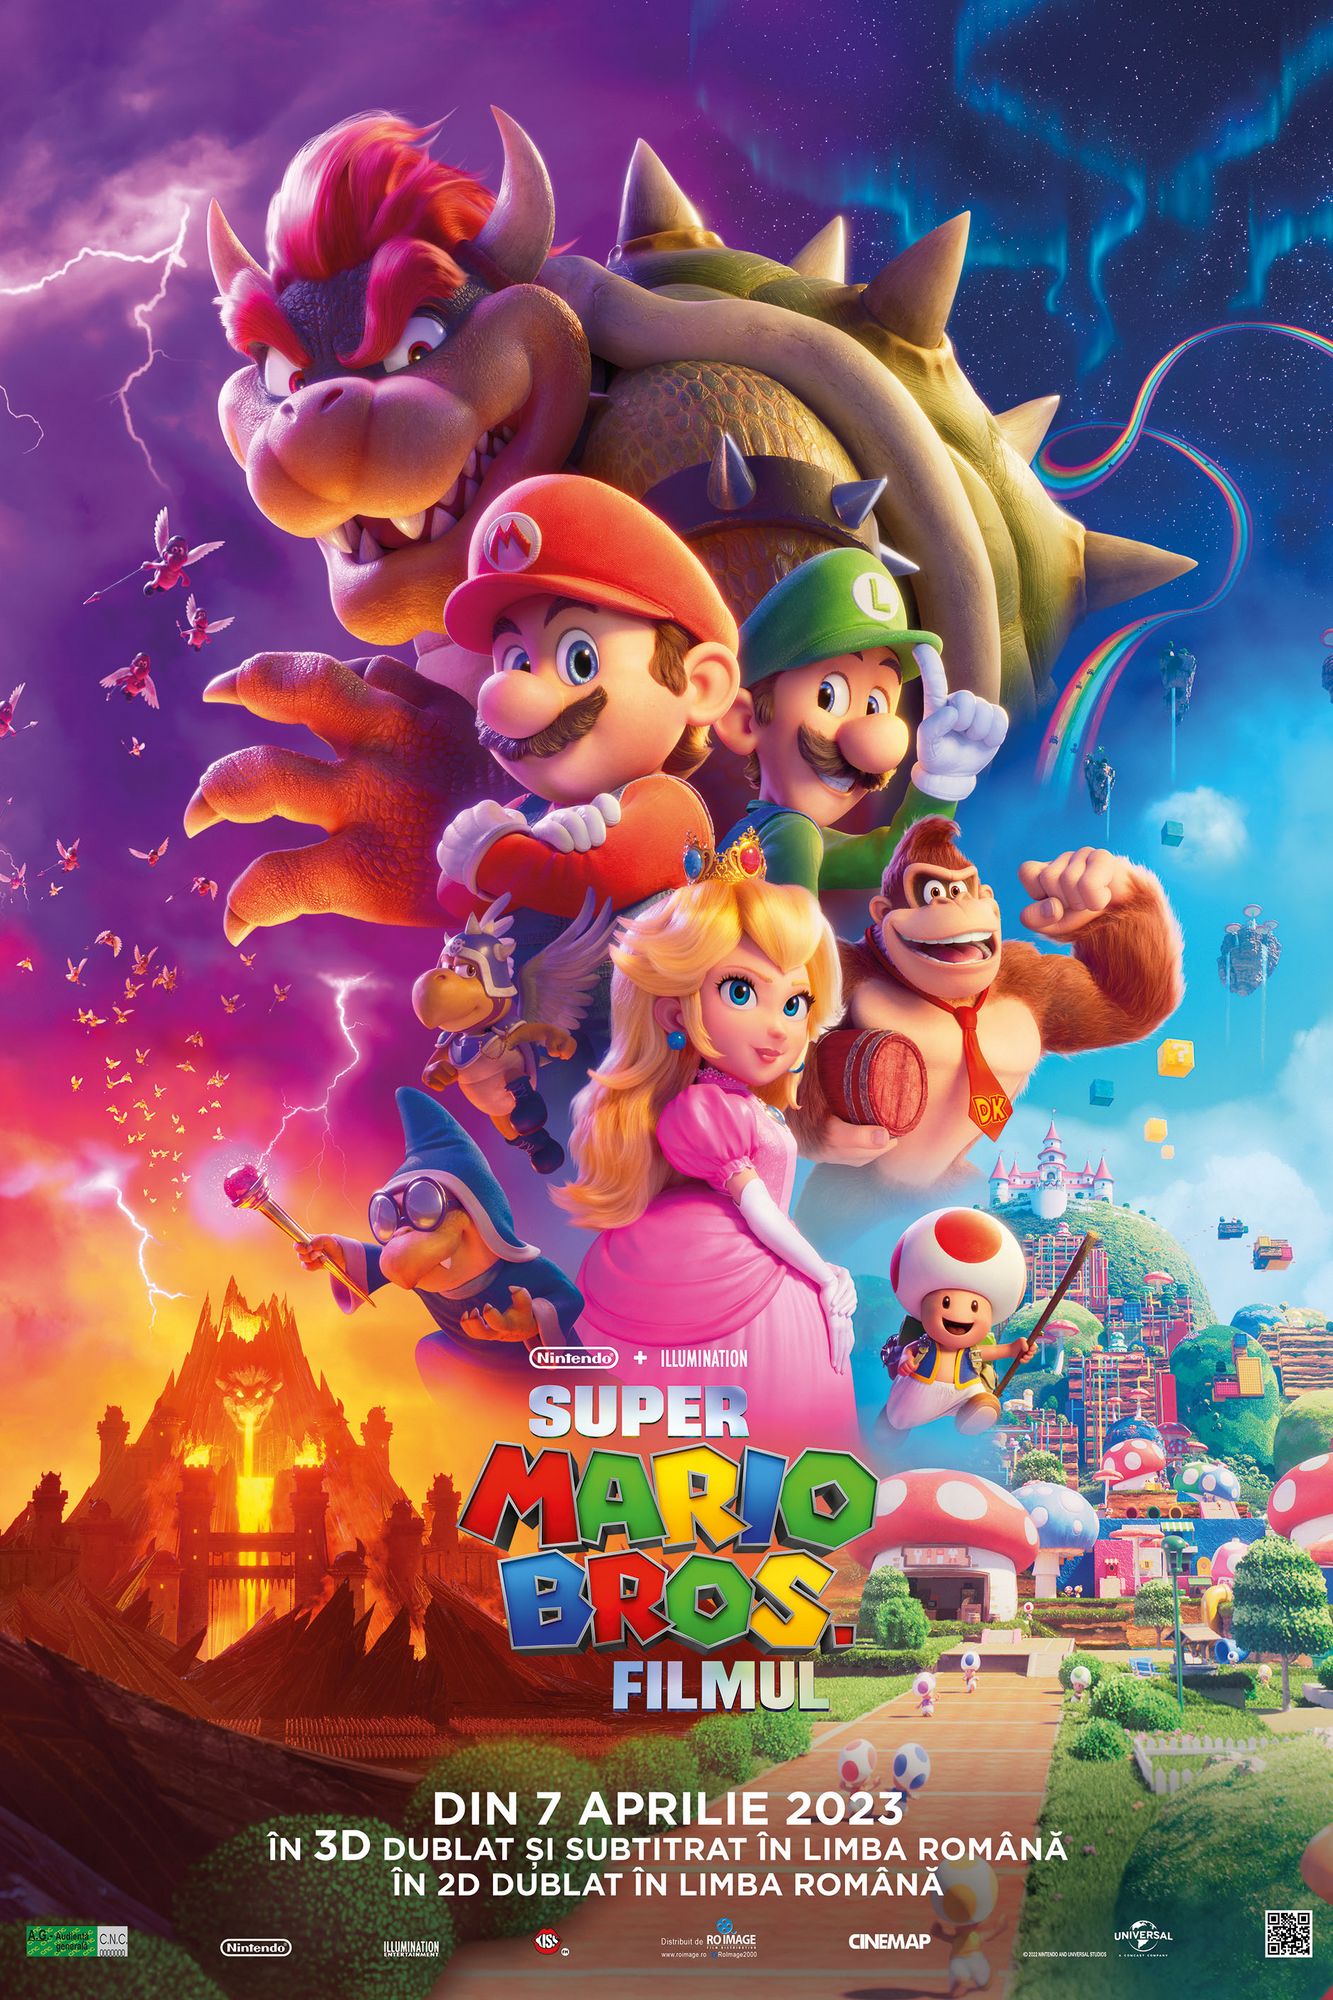 Super Mario Bros Filmul POSTER